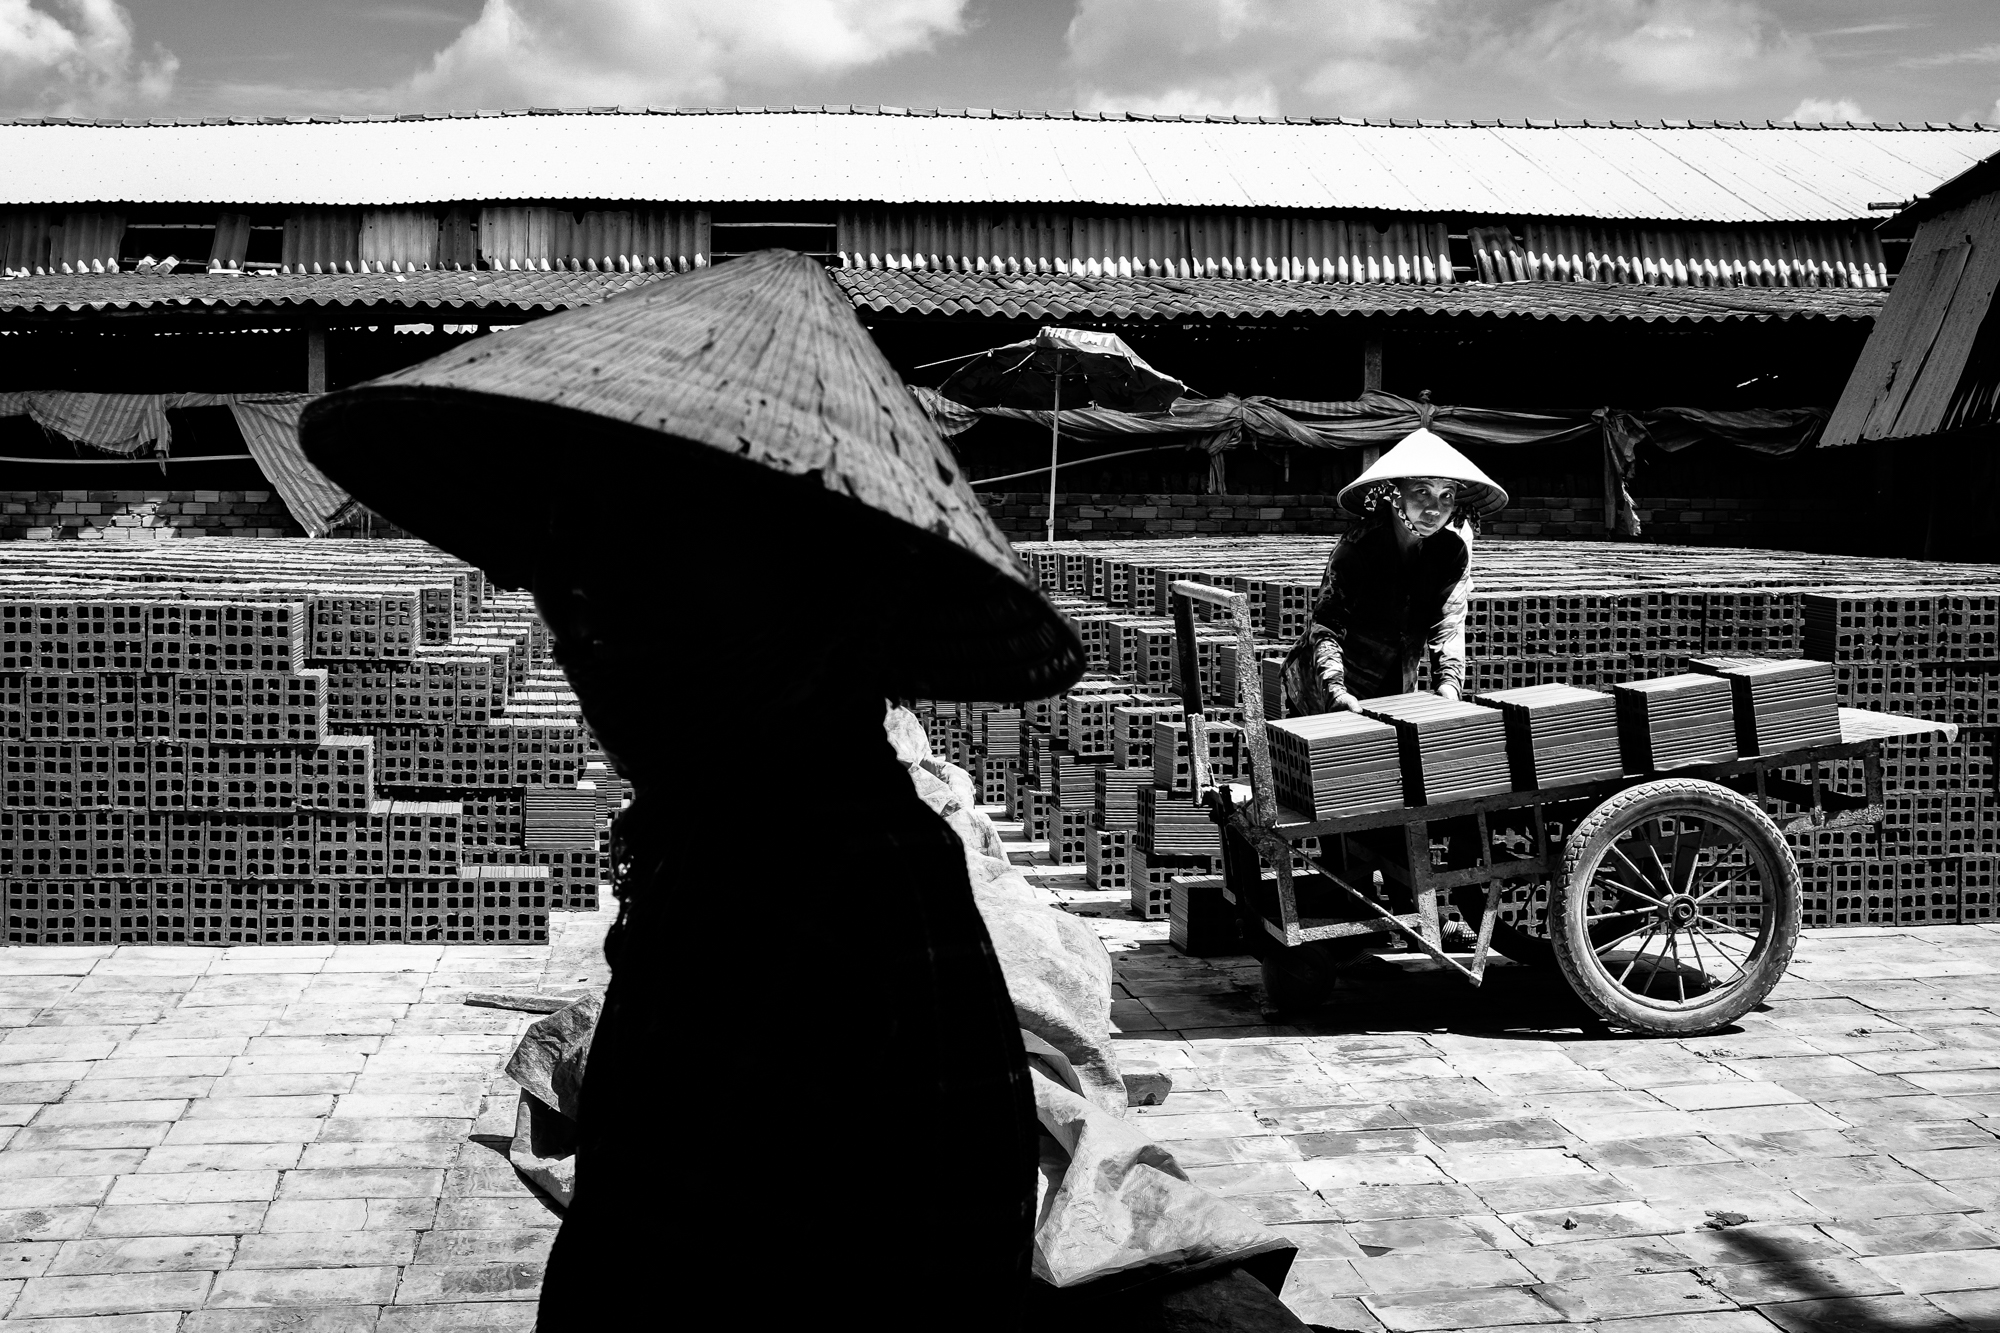 Women in a brick making factory in the Mekong Delta region of Vietnam.